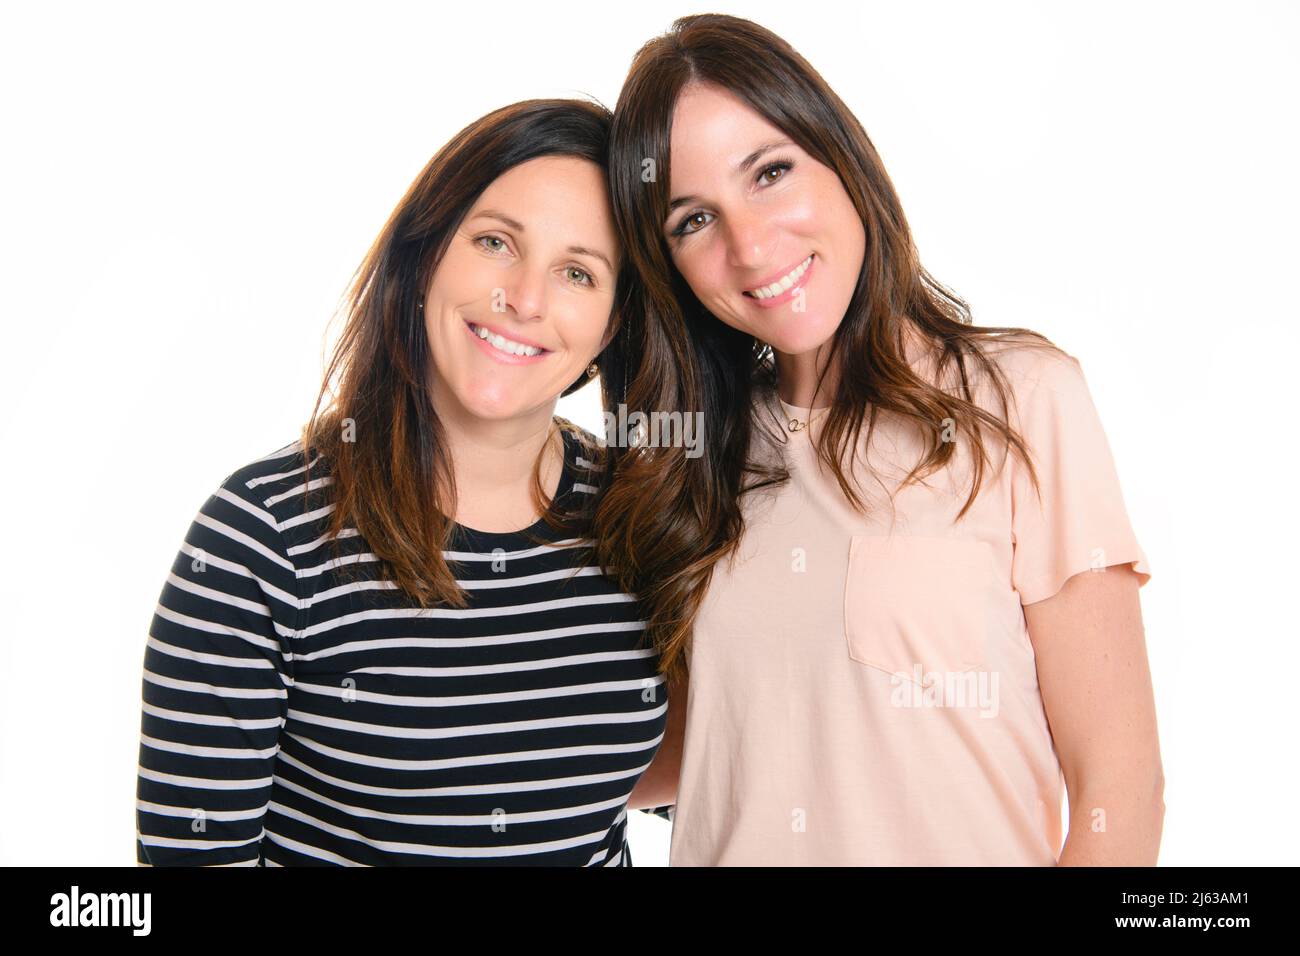 Zwei lächelnde beste Mädchen Freunde Brünette auf weißem Hintergrund. Nahaufnahme Gesicht Porträt von zwei jungen schönen Frauen. Stockfoto